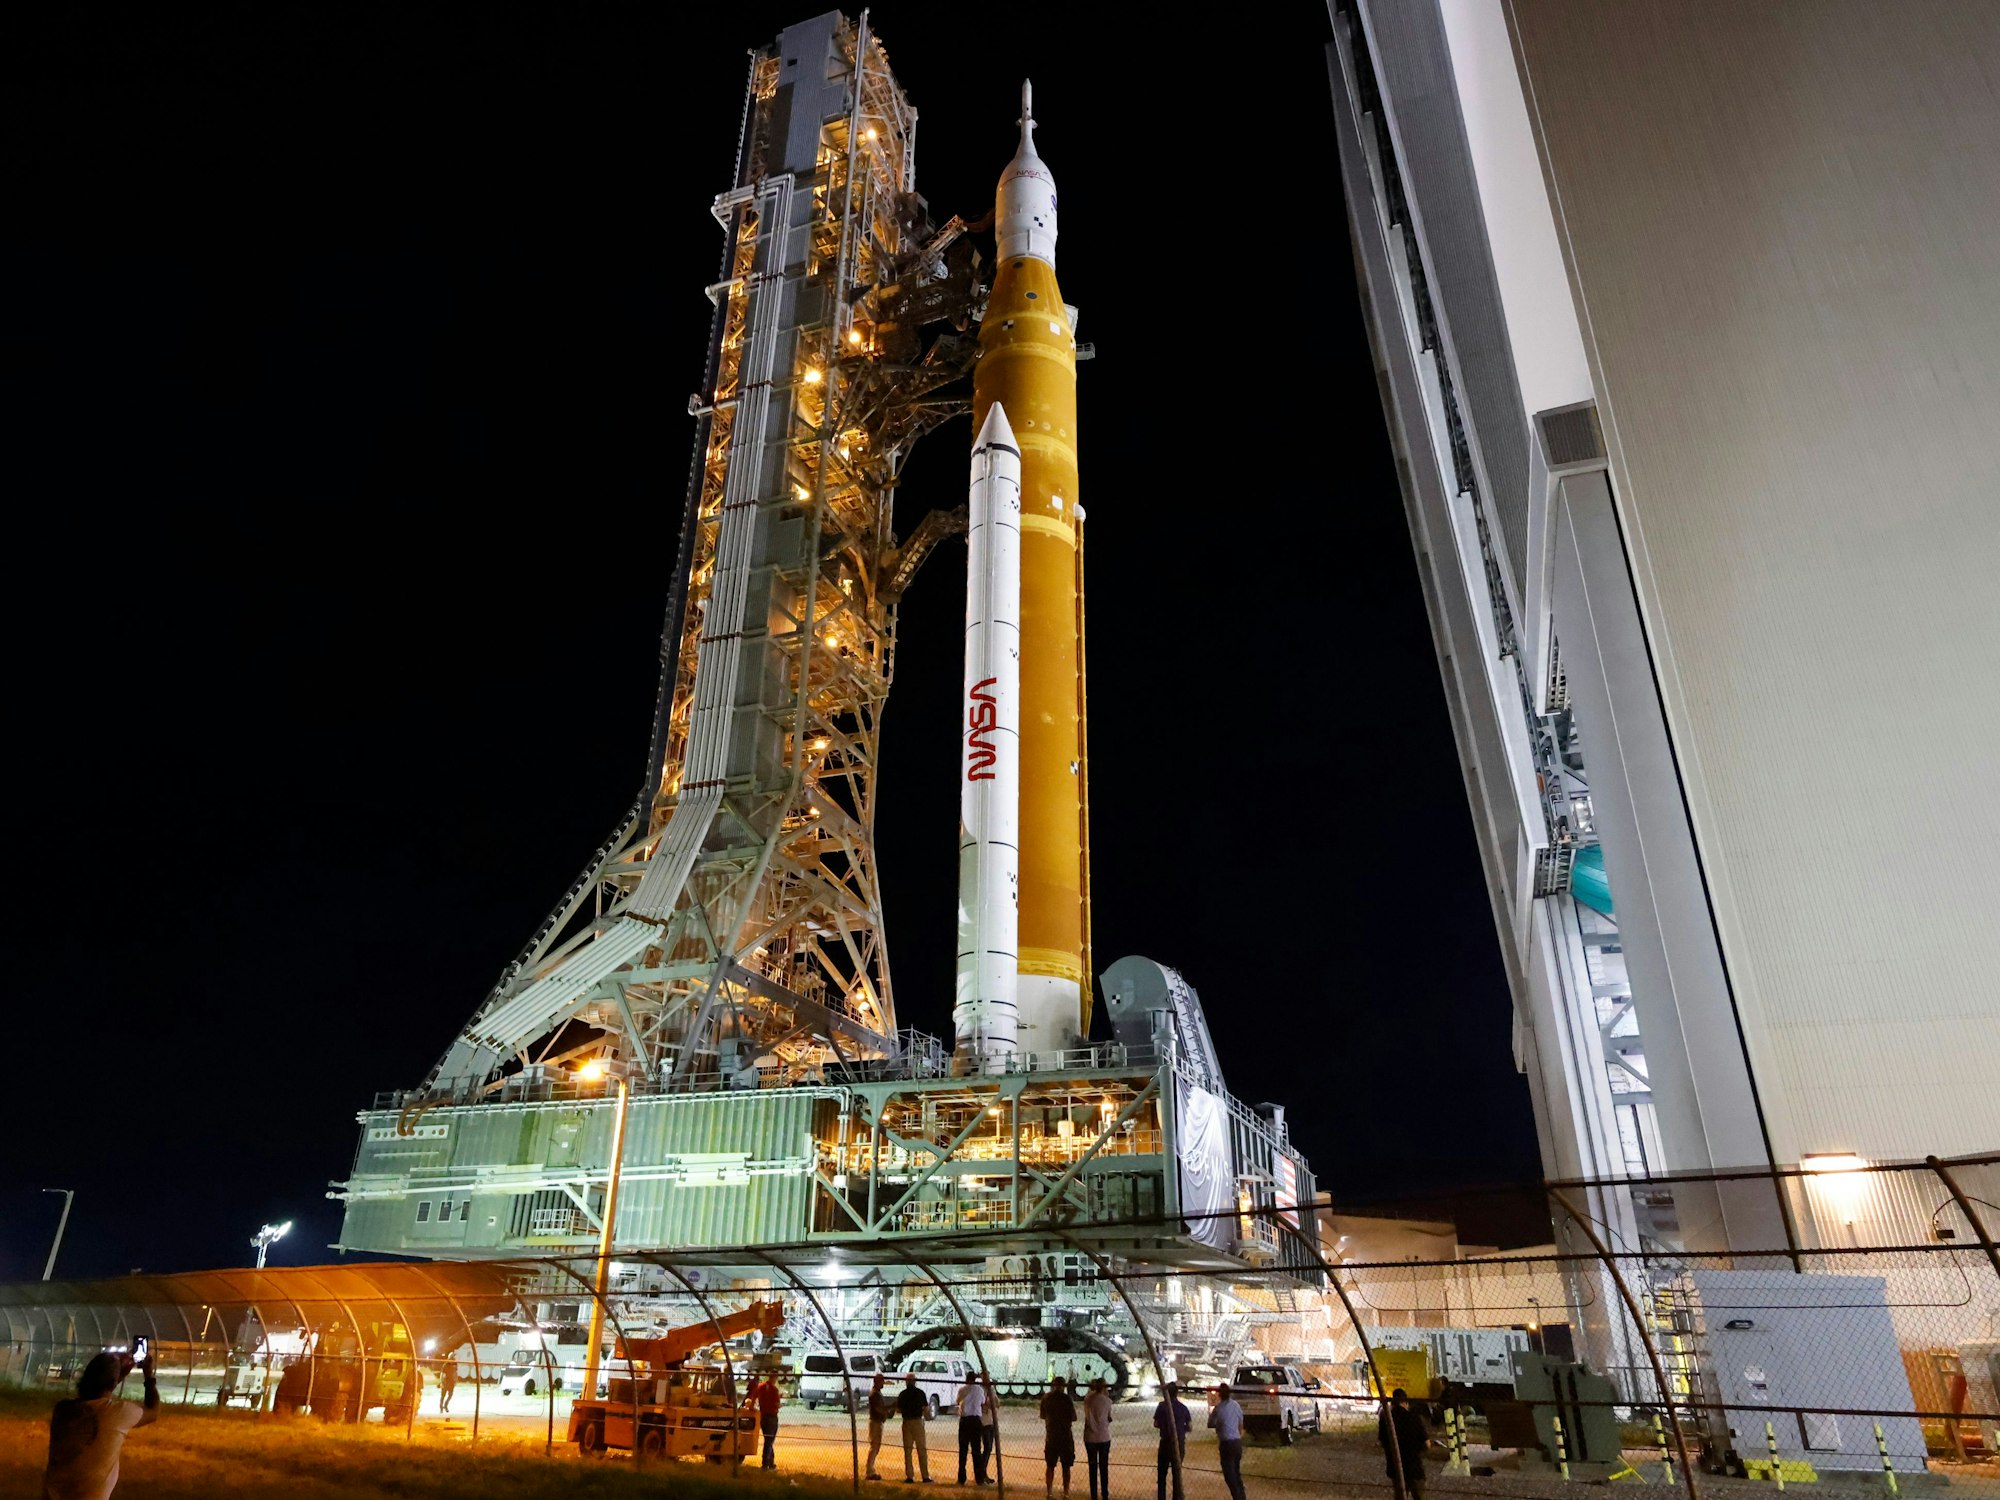 Die Artemis-Rakete der NASA mit dem Orion-Raumschiff an Bord verlässt das Vehicle Assembly Building und bewegt sich langsam zur Startrampe 39B im Kennedy Space Center.